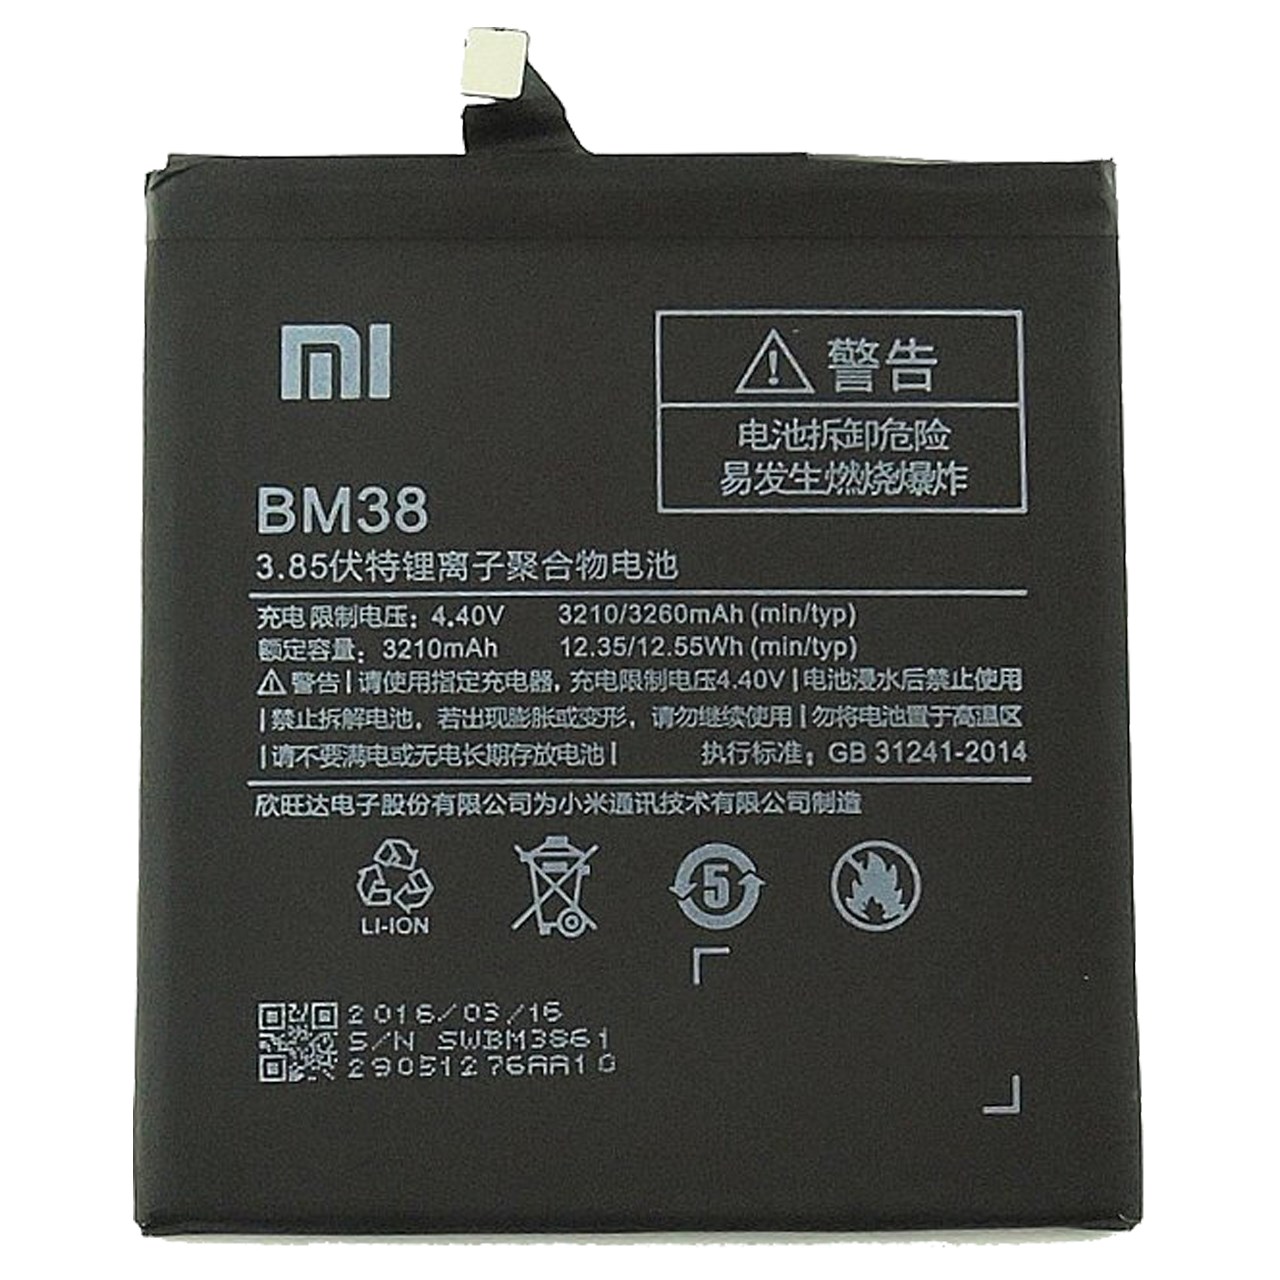 باتری موبایل  مدل BM38 مناسب برای گوشی Redmi 4S